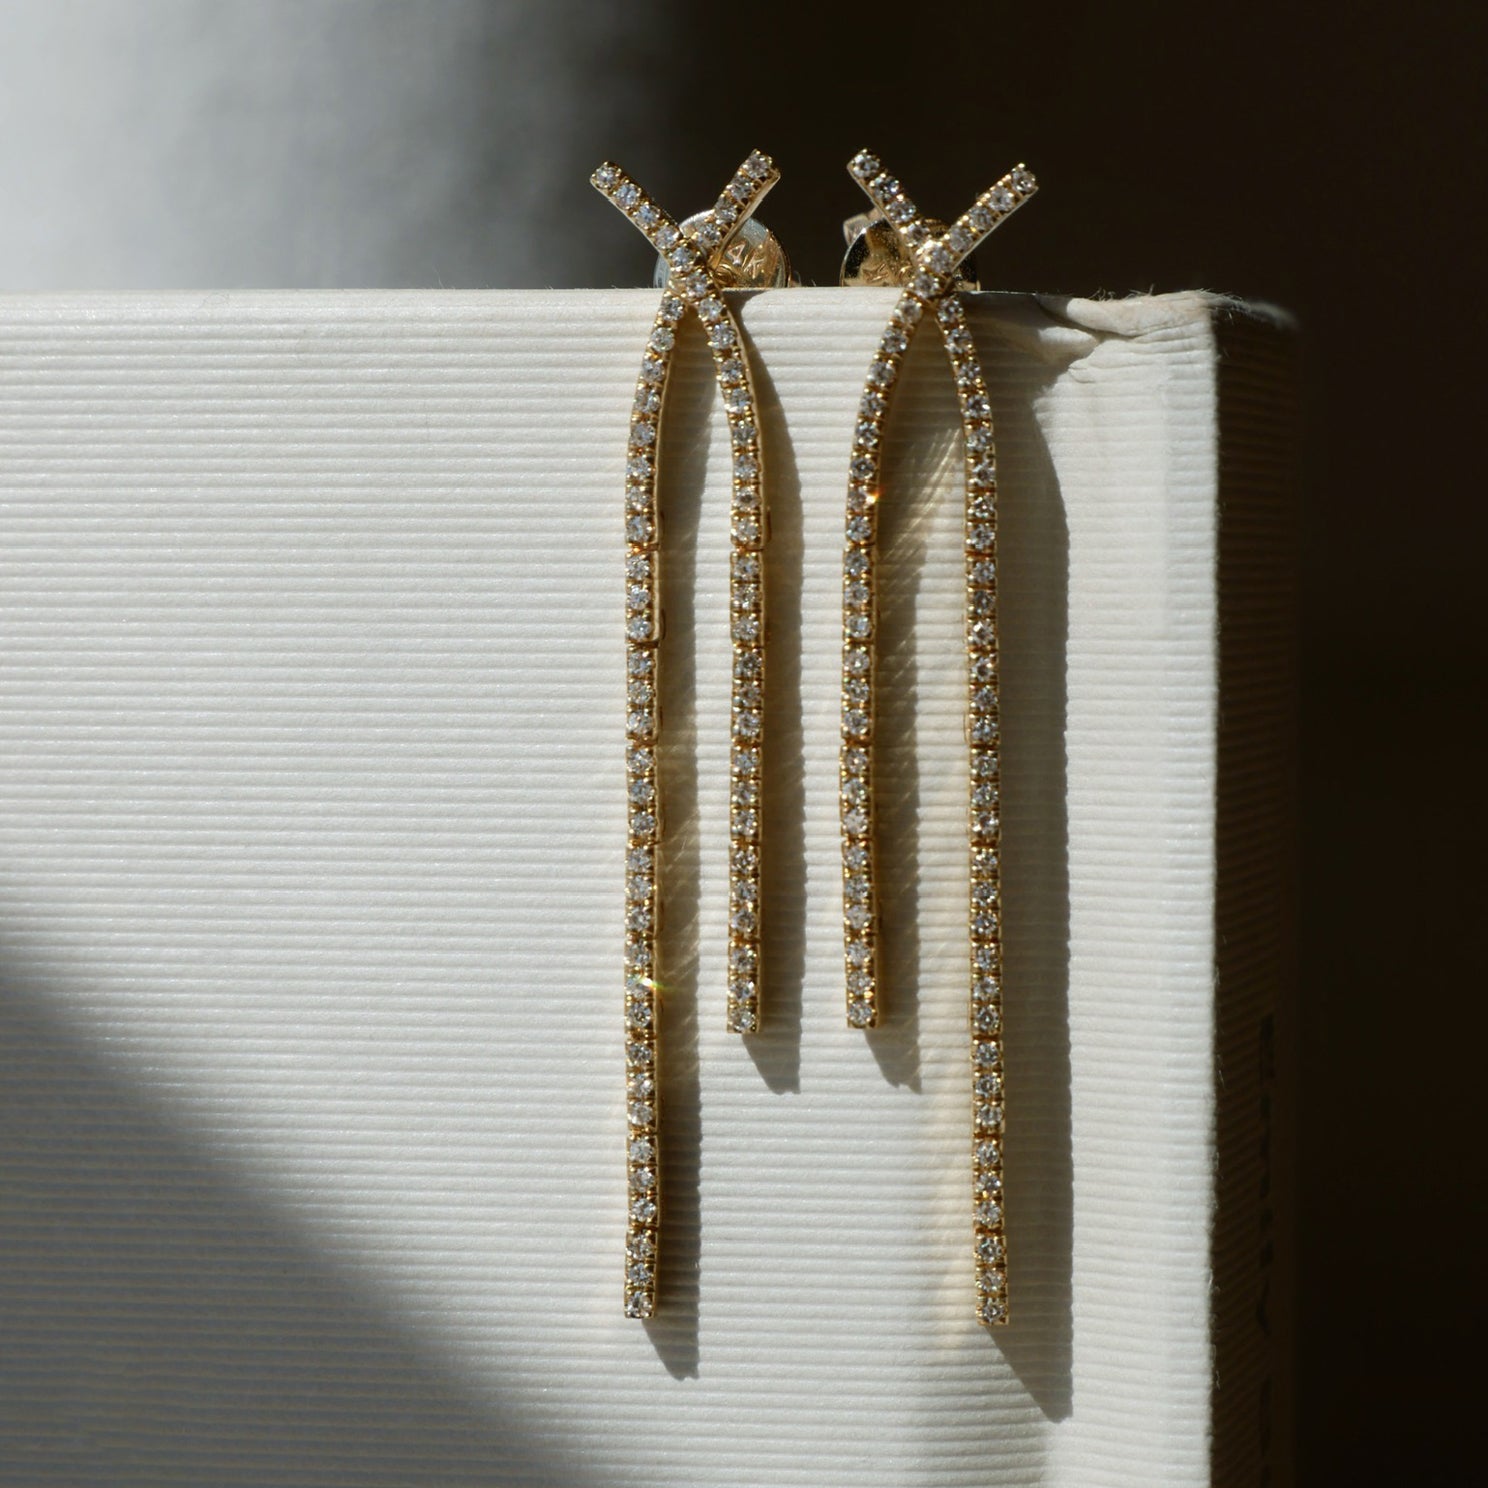 Gold Fringe Tassel Earrings - Extra Long